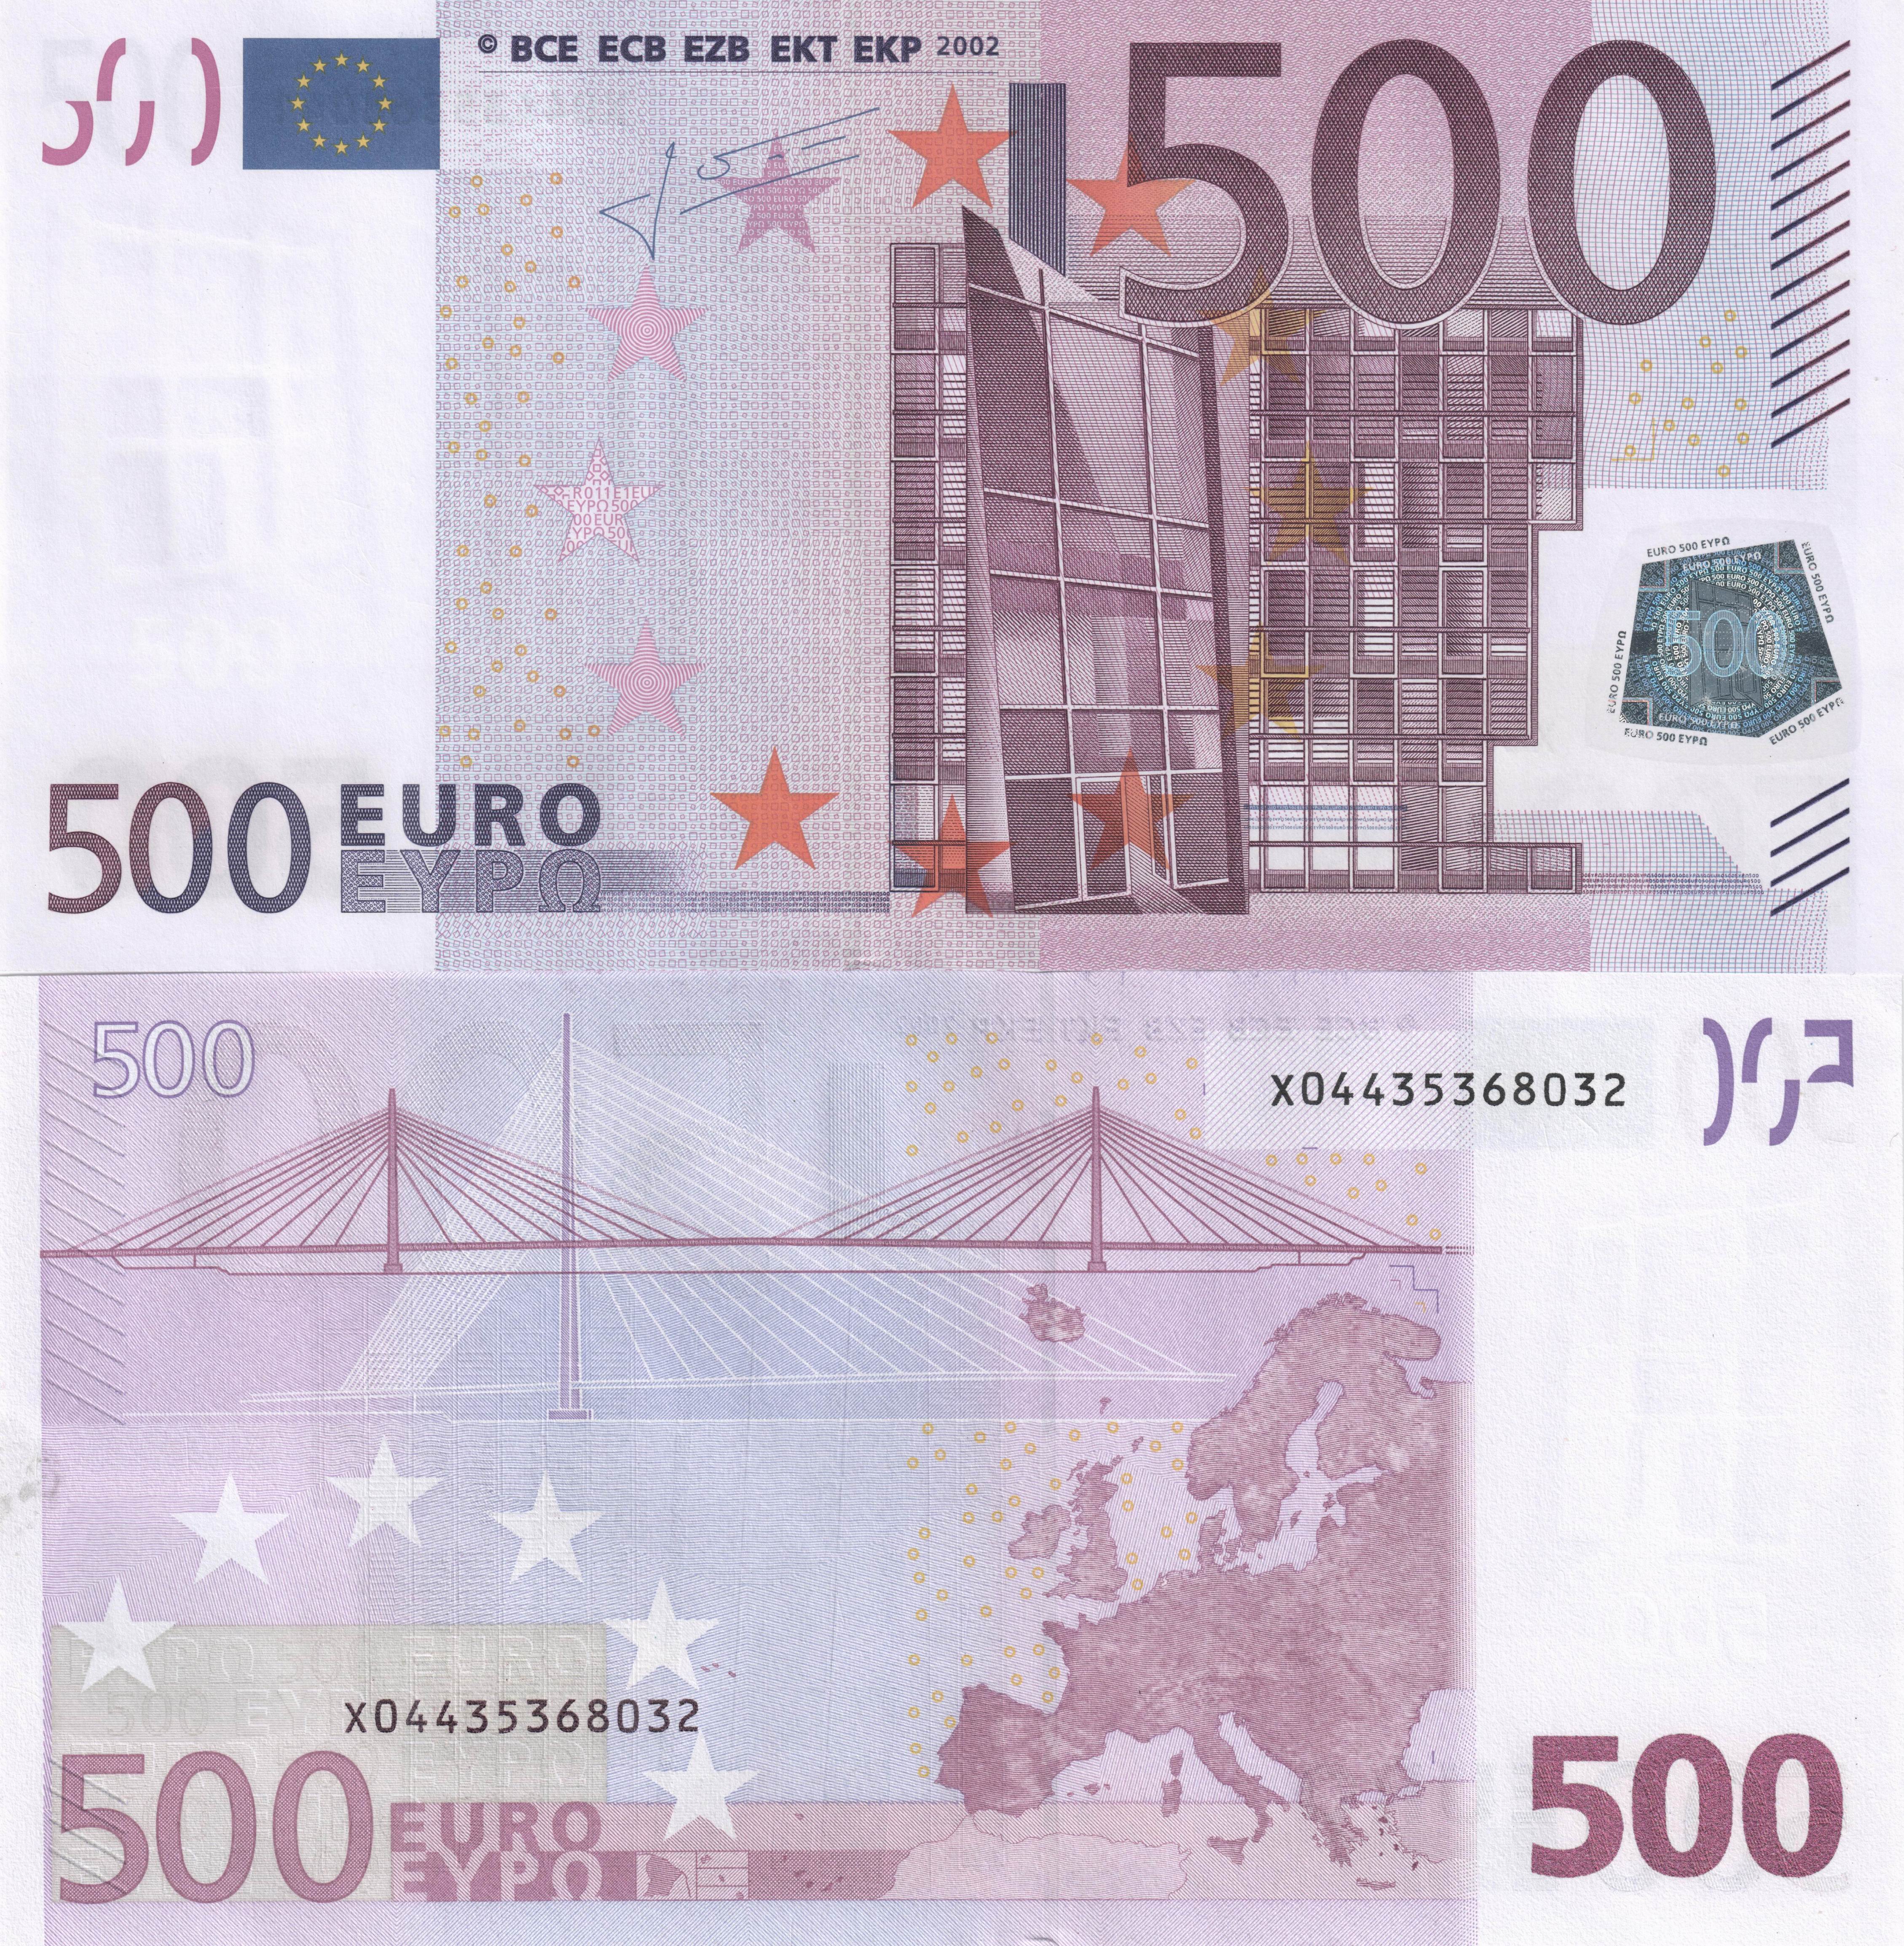 Купюра валют. 500 Евро купюра 2002. Банкнота 500 евро. 500 Евро купюра с двух сторон. Изображение 500 евро купюры.